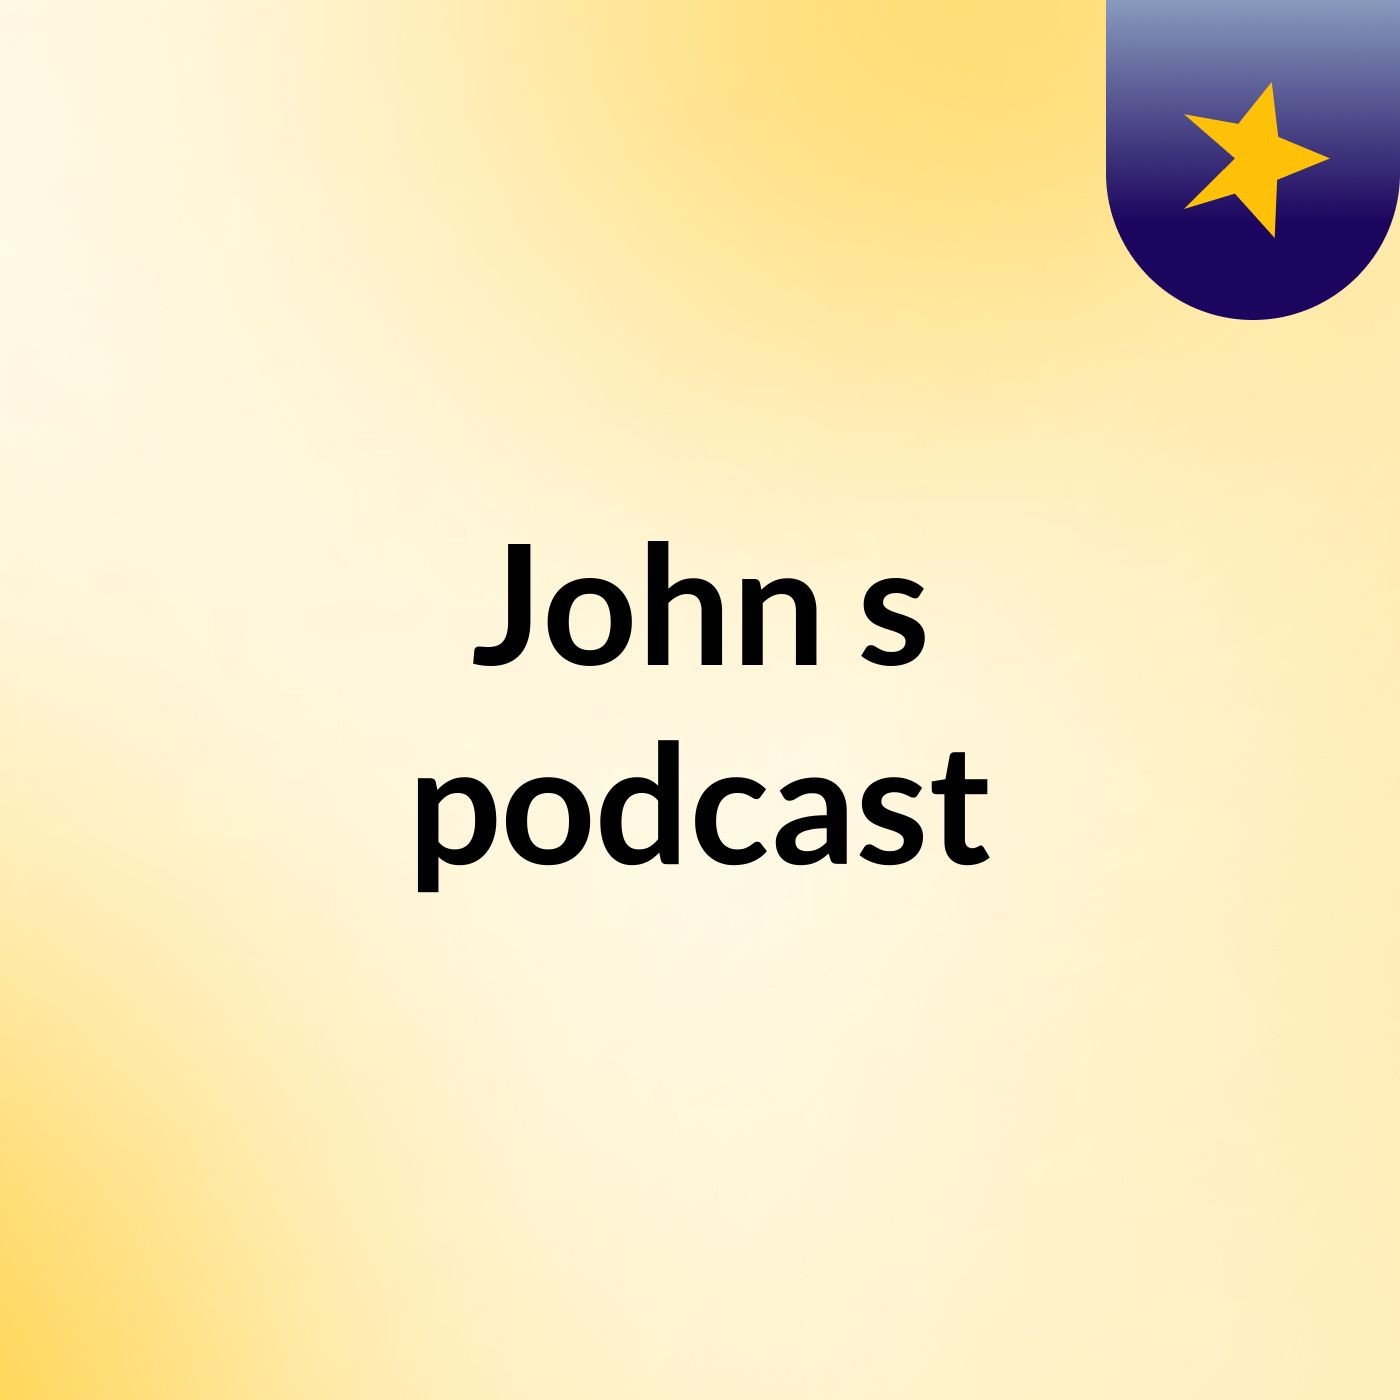 John's podcast